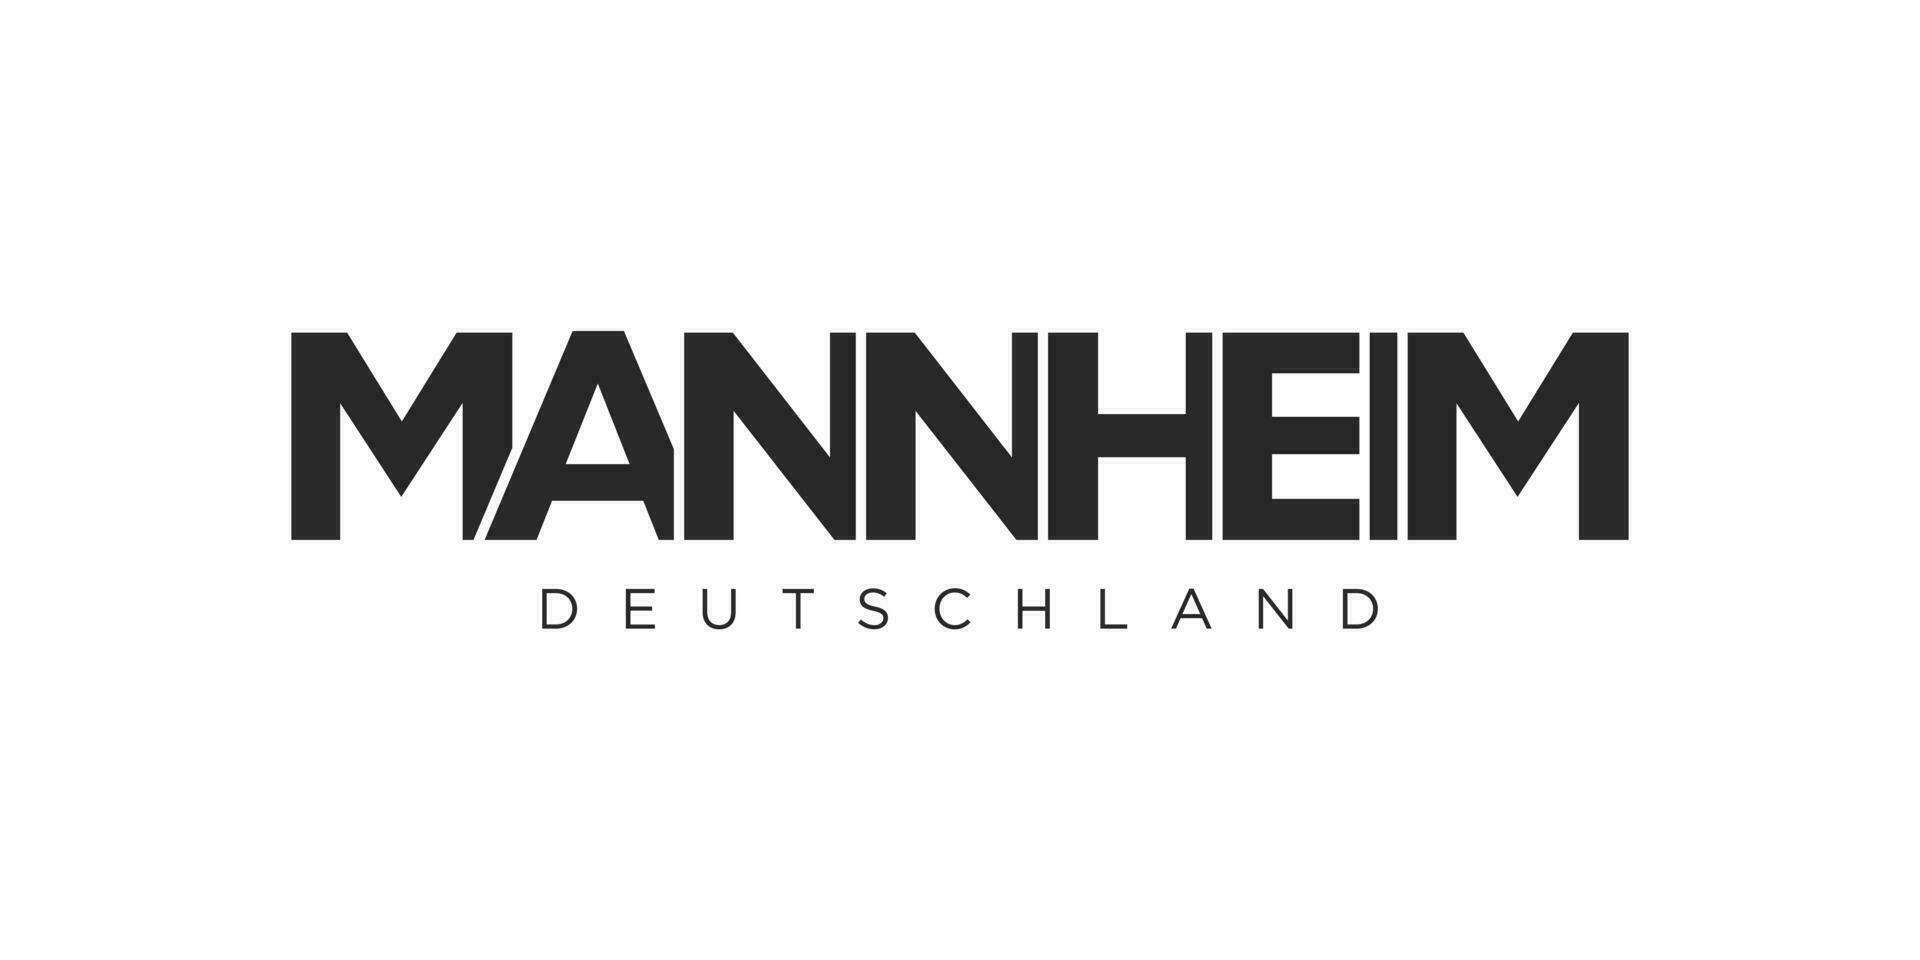 Mannheim duitsland, modern en creatief vector illustratie ontwerp met de stad van Duitsland voor reizen spandoeken, affiches, en ansichtkaarten.